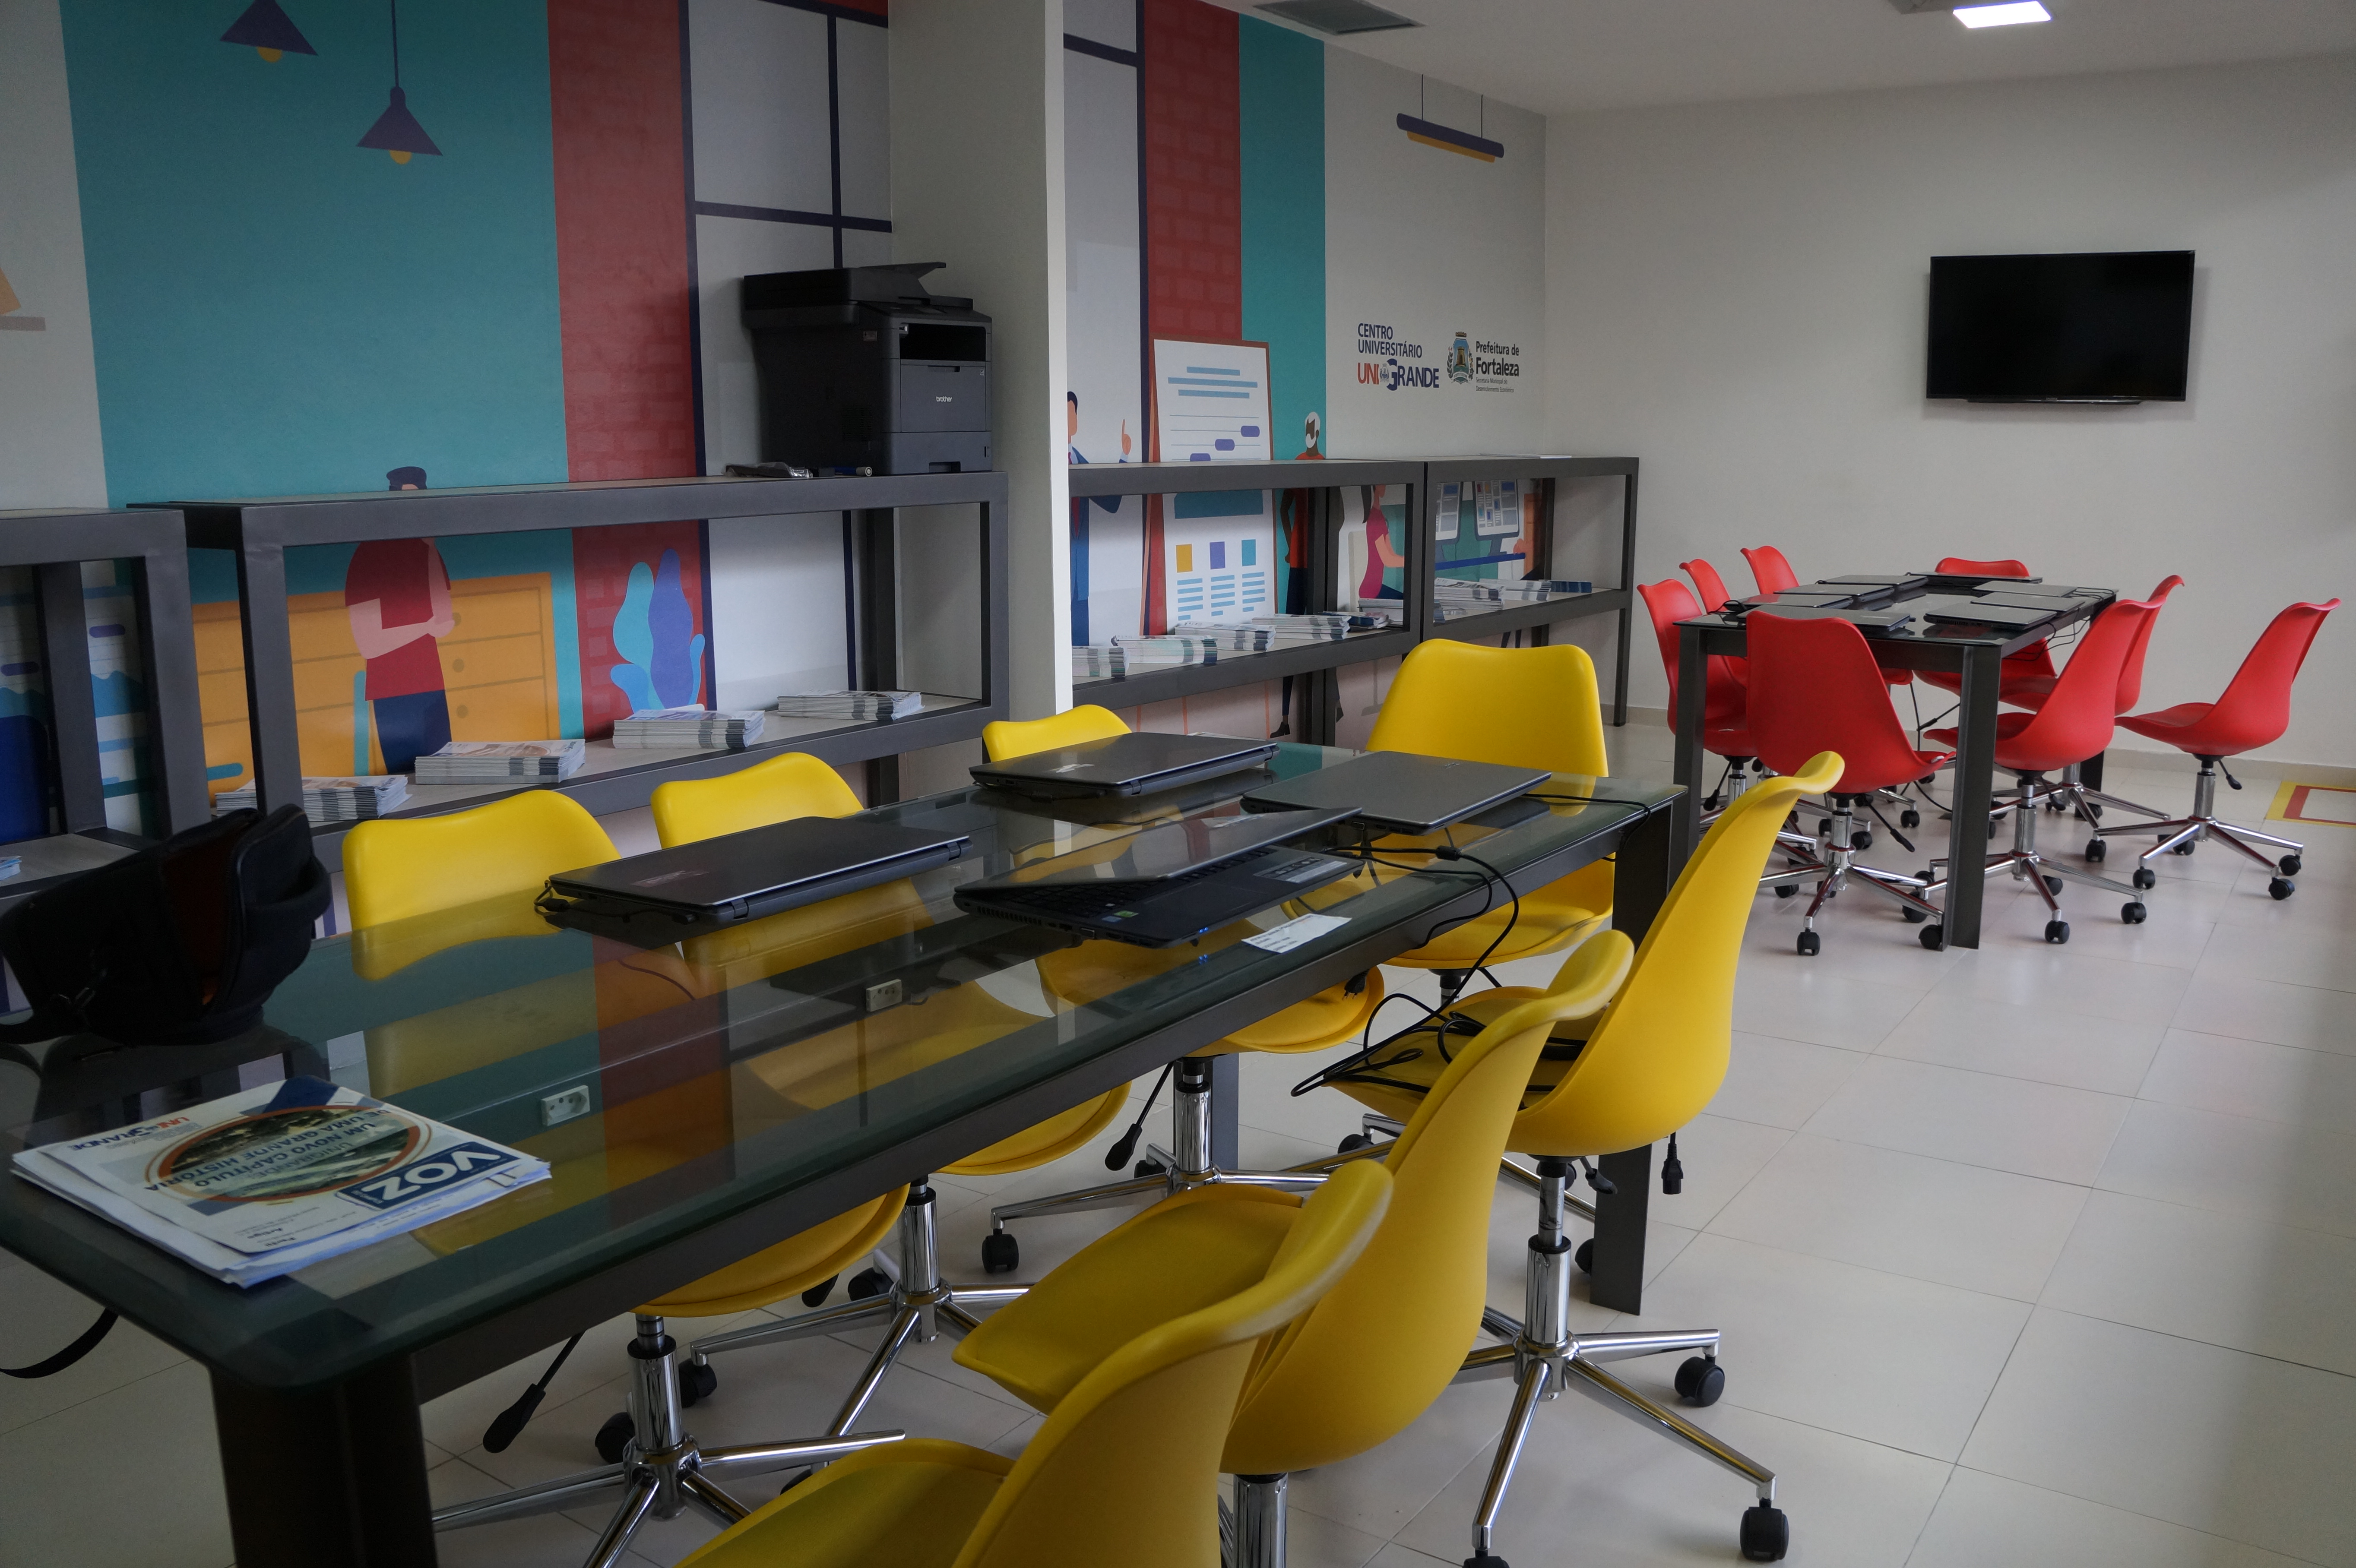 Sala com duas mesas de reunião e cadeiras coloridas ao redor delas